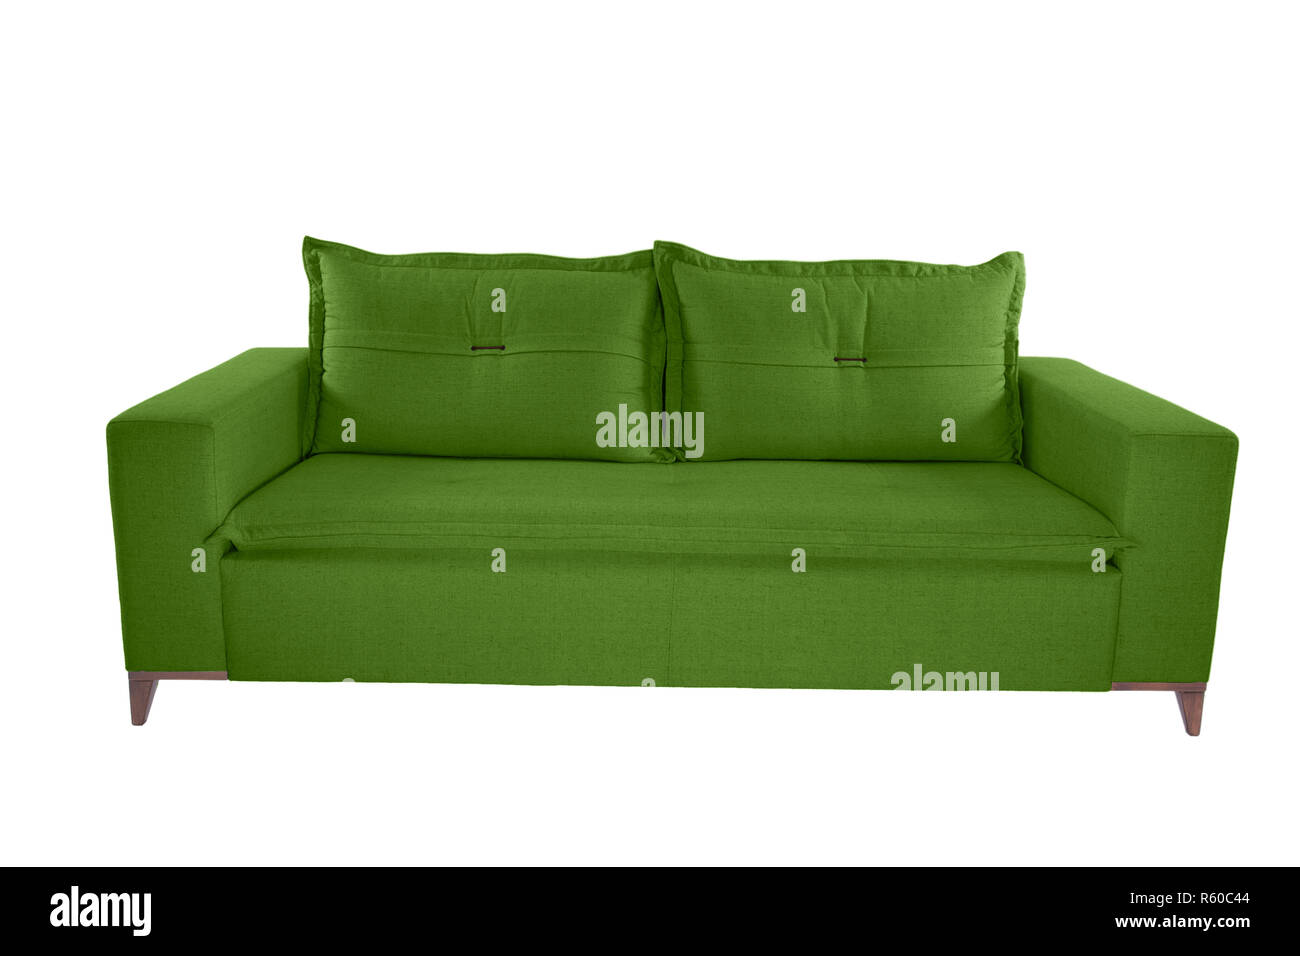 Suede color moderno sofá sofá aislado sobre fondo blanco. Foto de stock